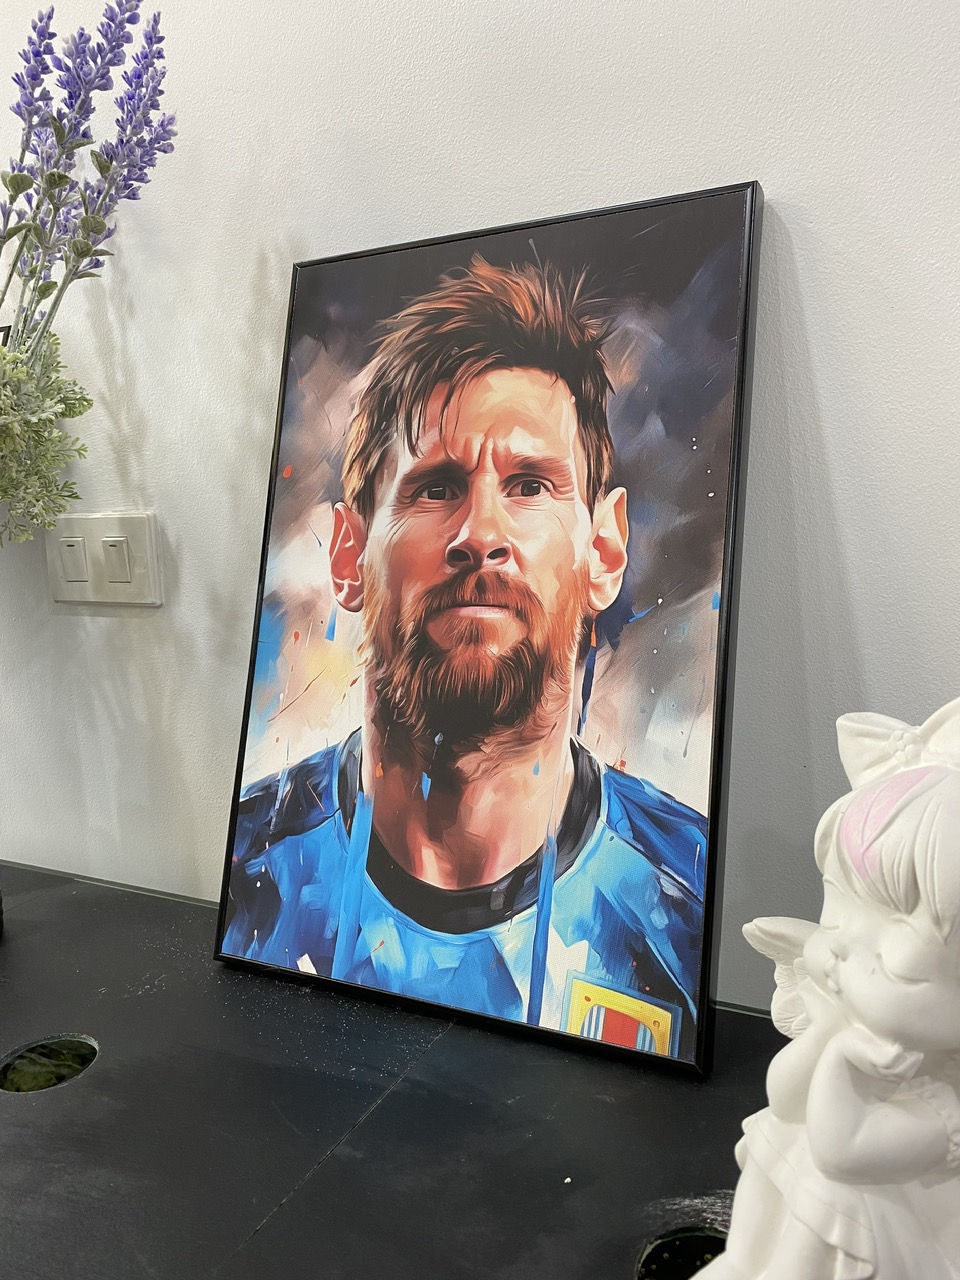 Quà tặng cho tâm | Tranh nghệ thuật chân dung cầu thủ Messi | Tranh canvas (STA_Messi_01)